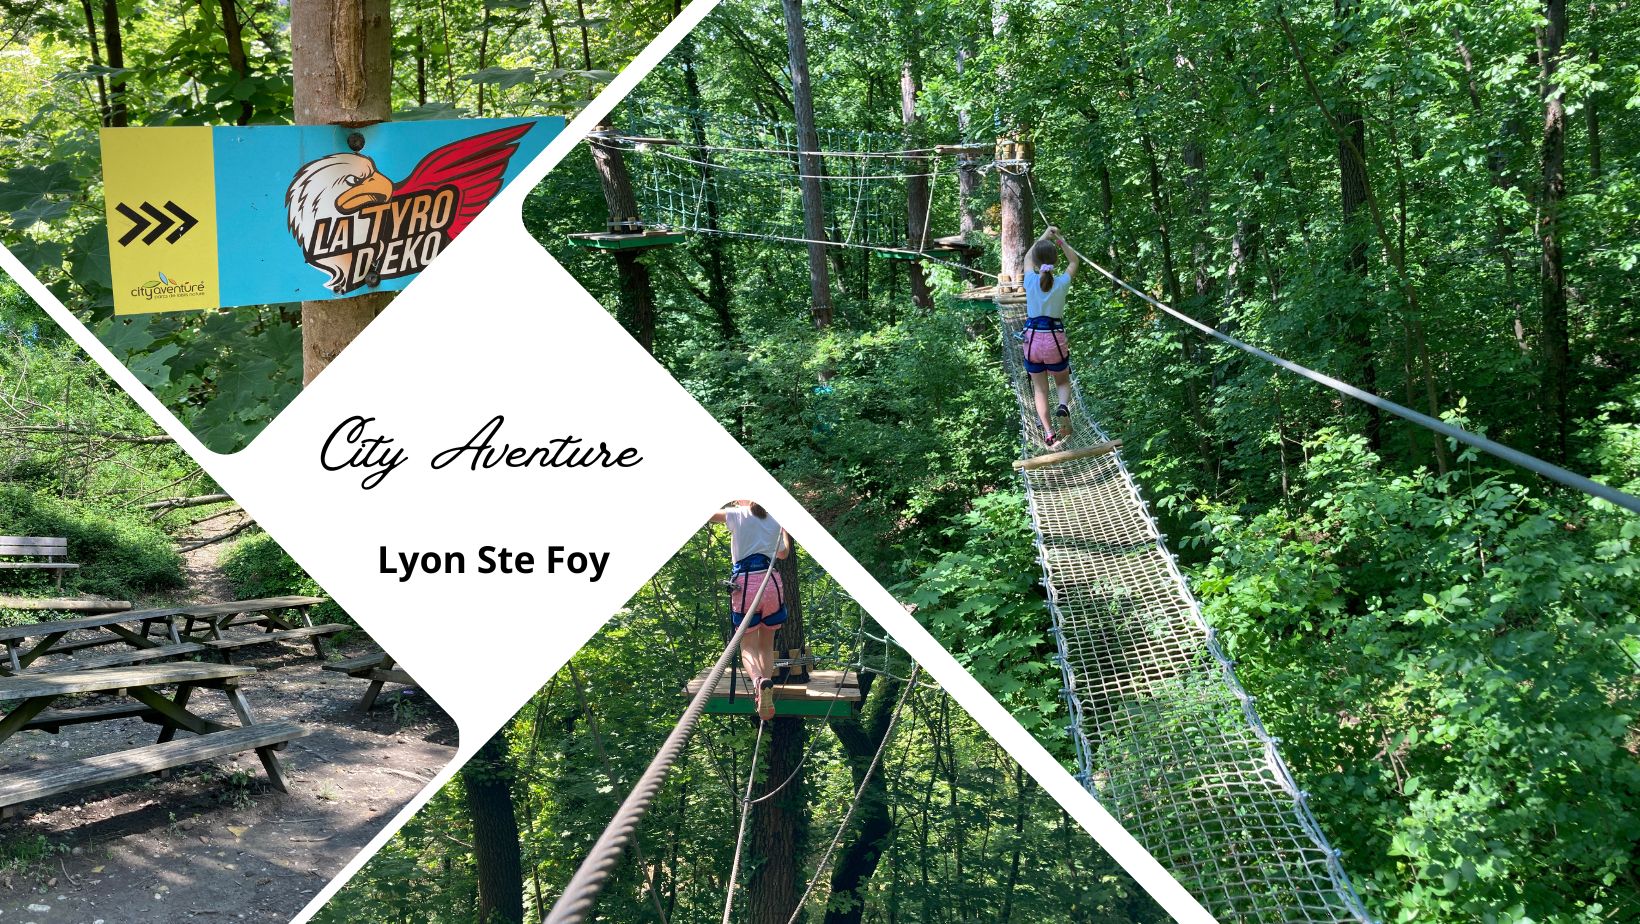 On a testé City Aventure Lyon Ste Foy, parc de loisirs nature